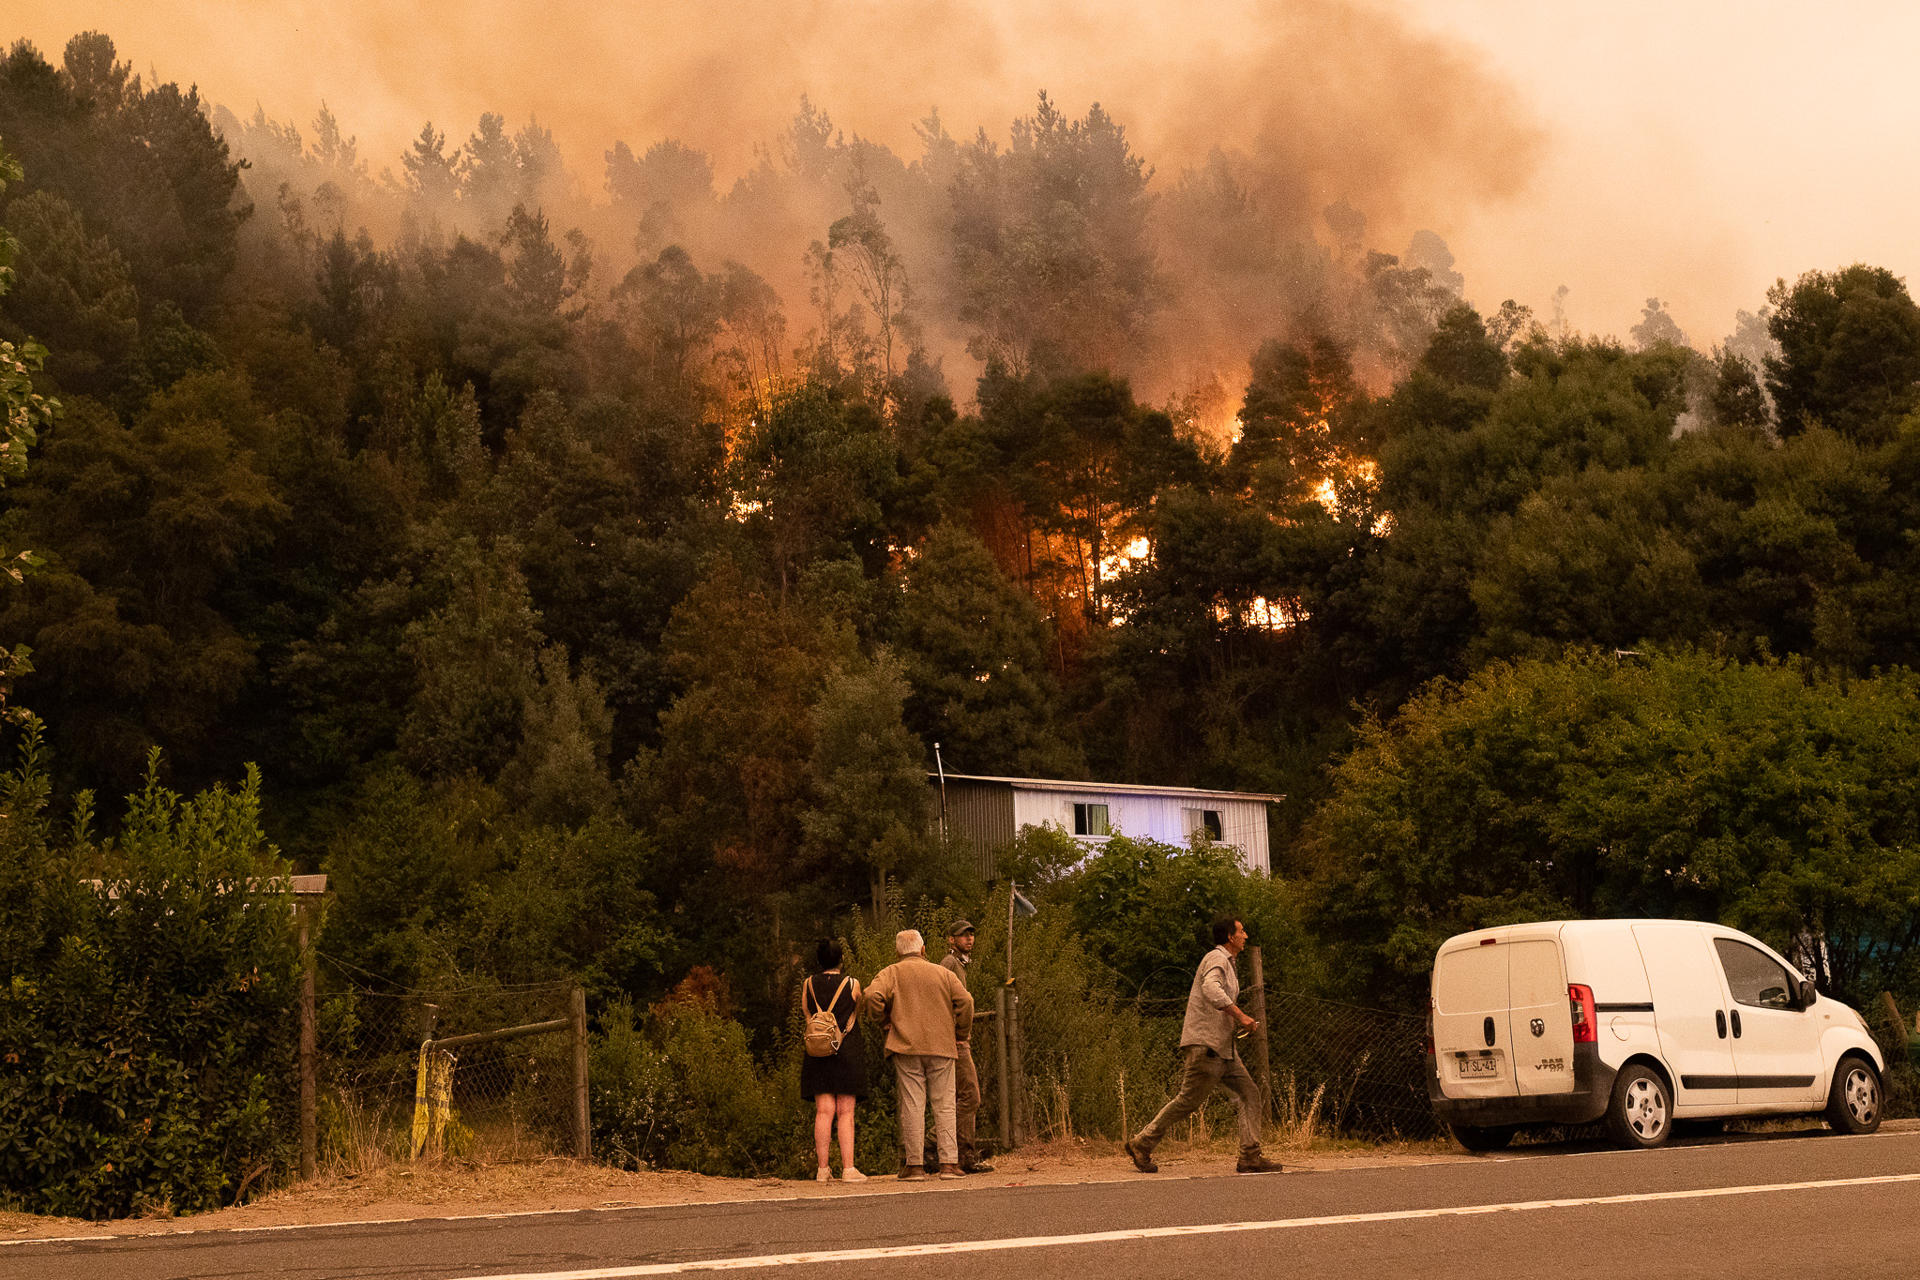 espana envia ayuda incendio forestal chile